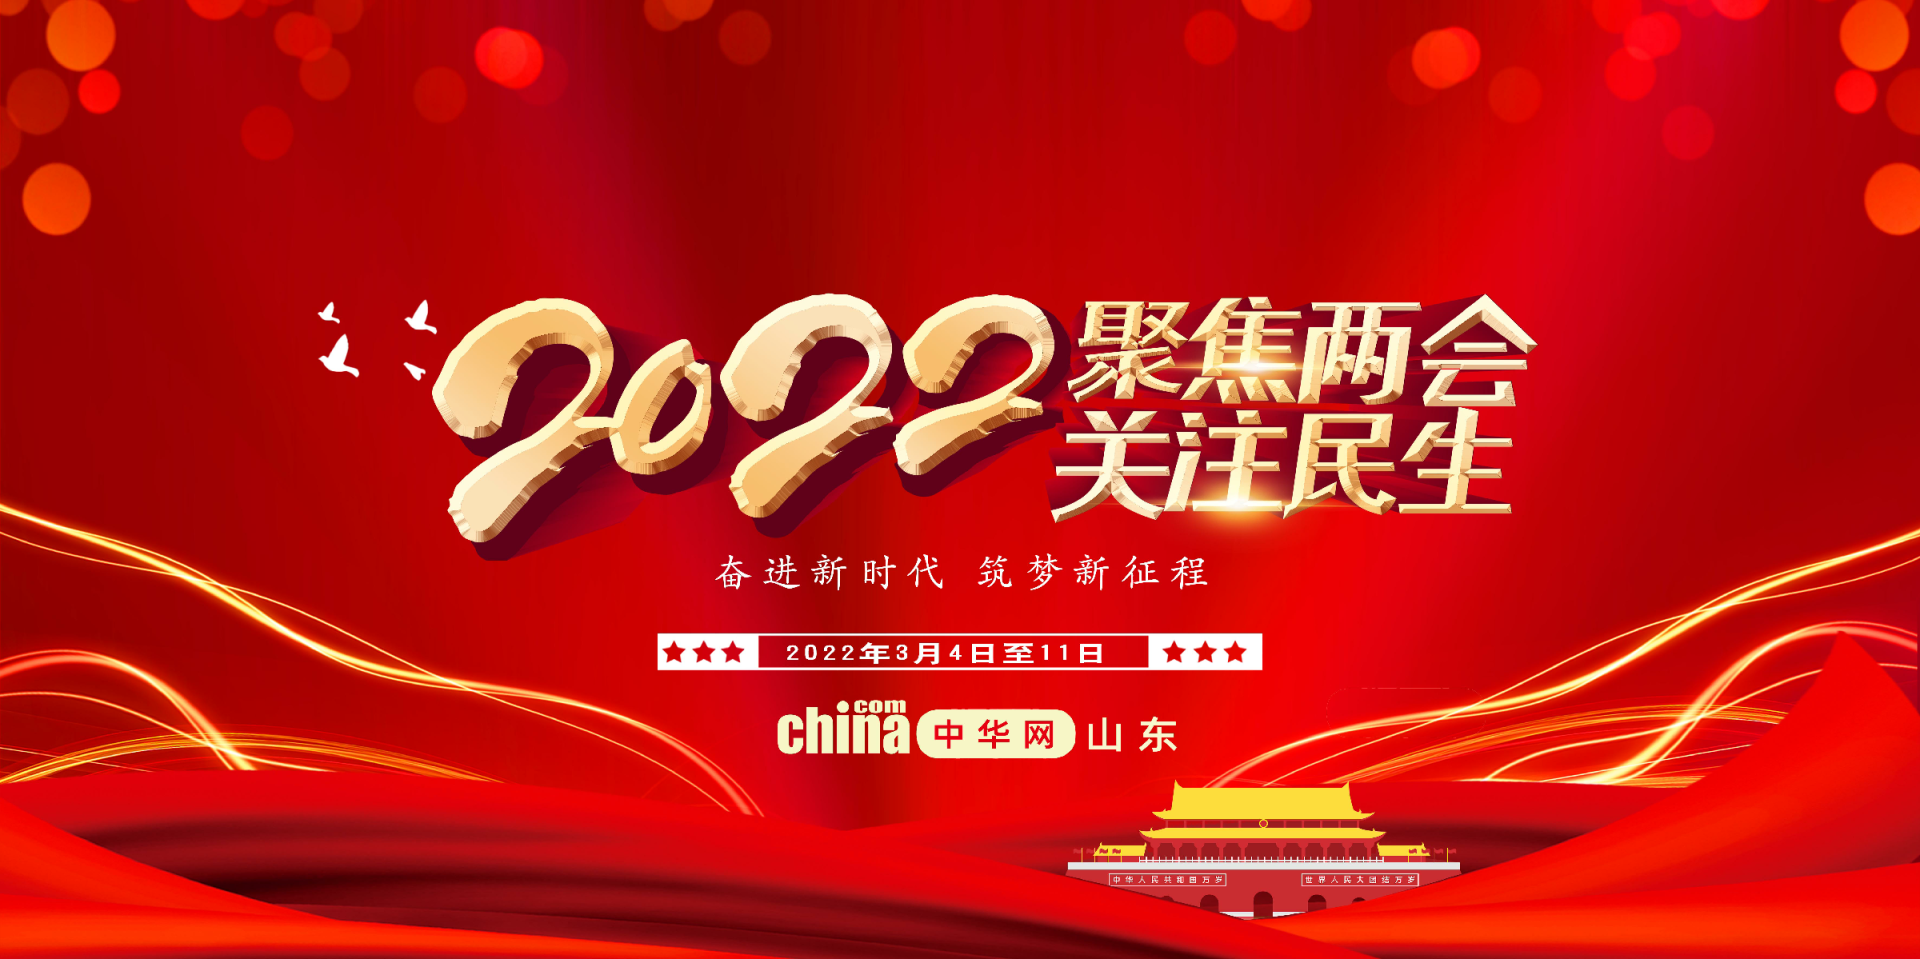 聚焦丨2022全国两会——中华网专题报道